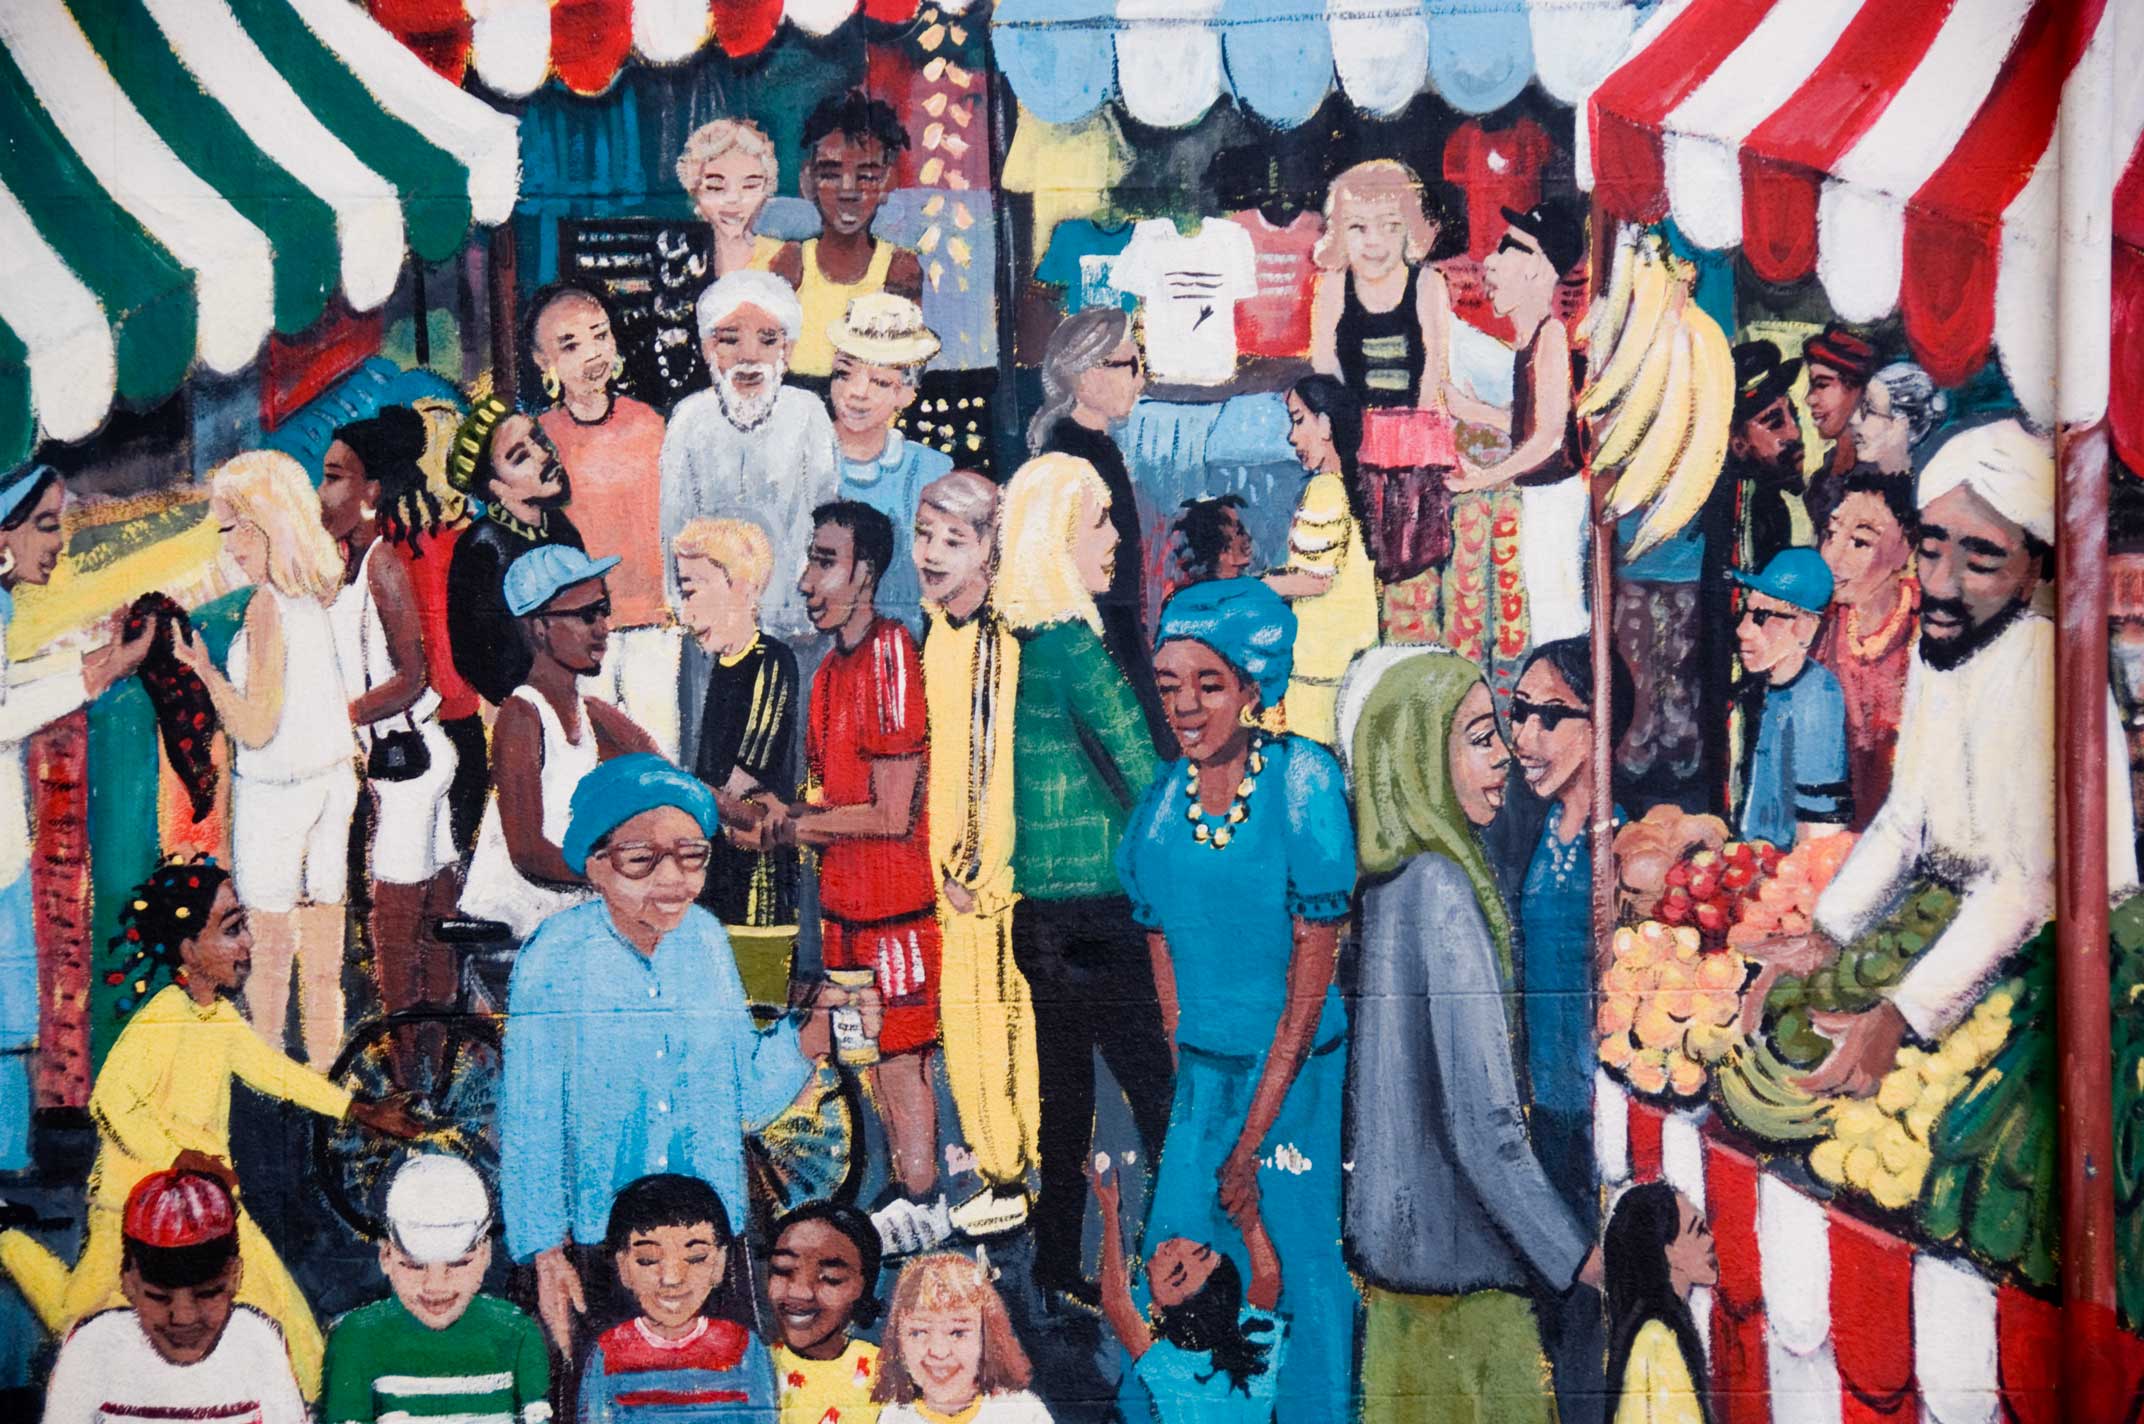 A mural showing a multi-cultural market scene.